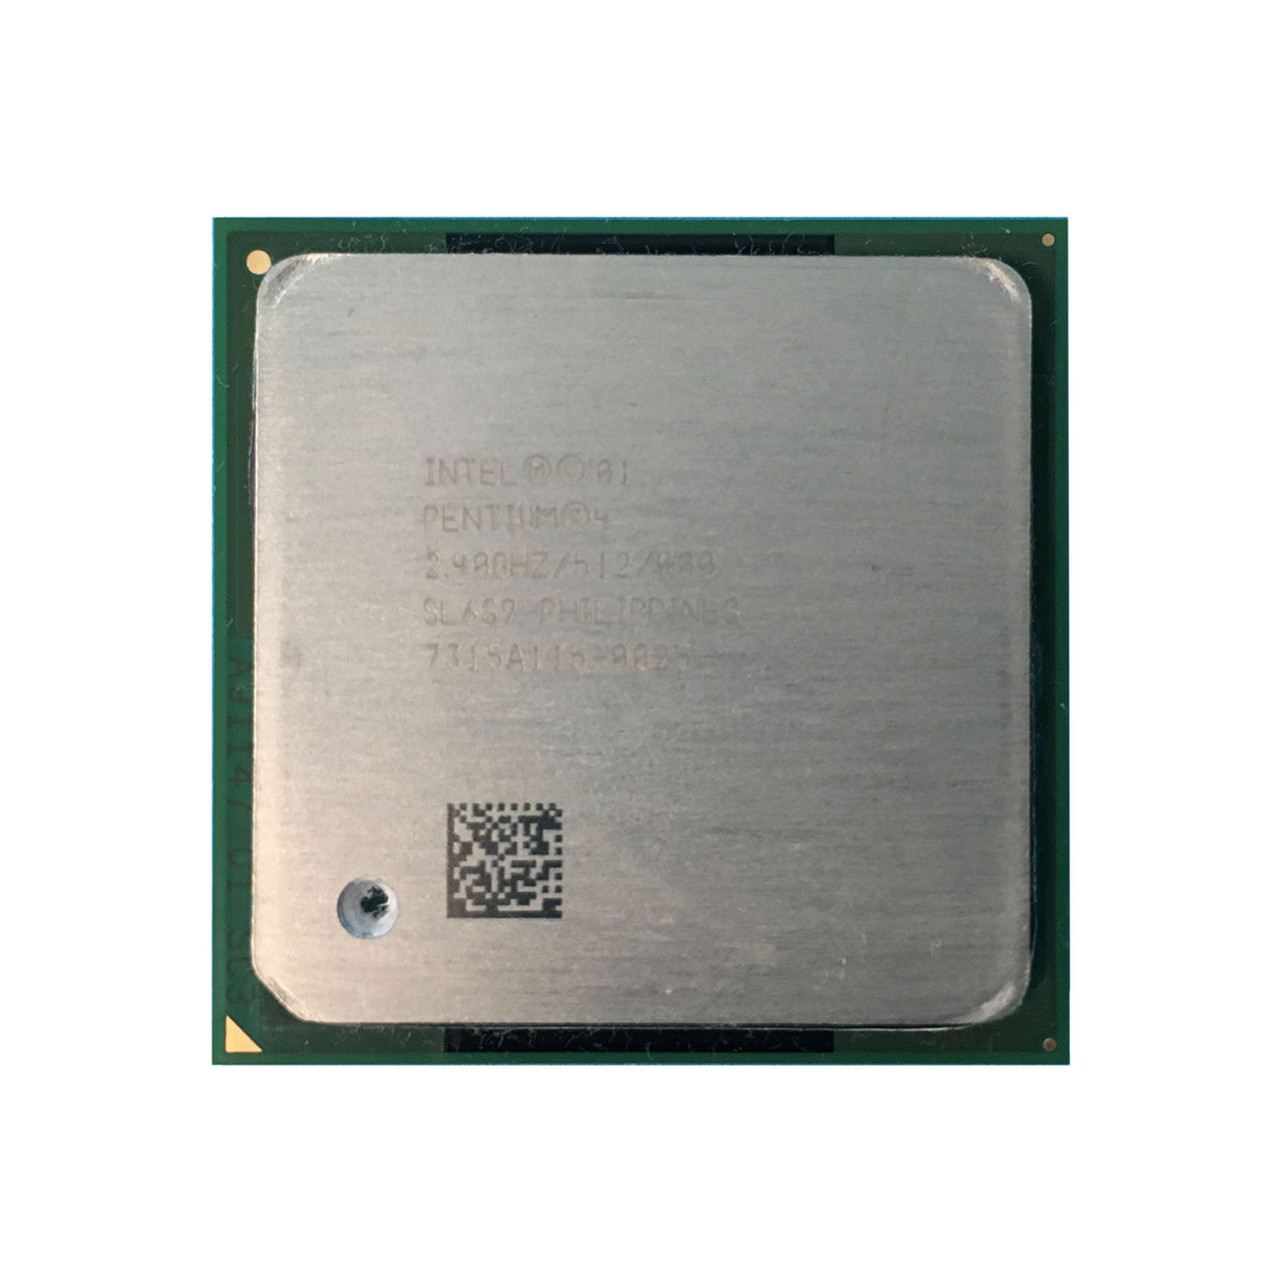 Dell 9U542 Intel P4 2.40Ghz 512K 400FSB Processor